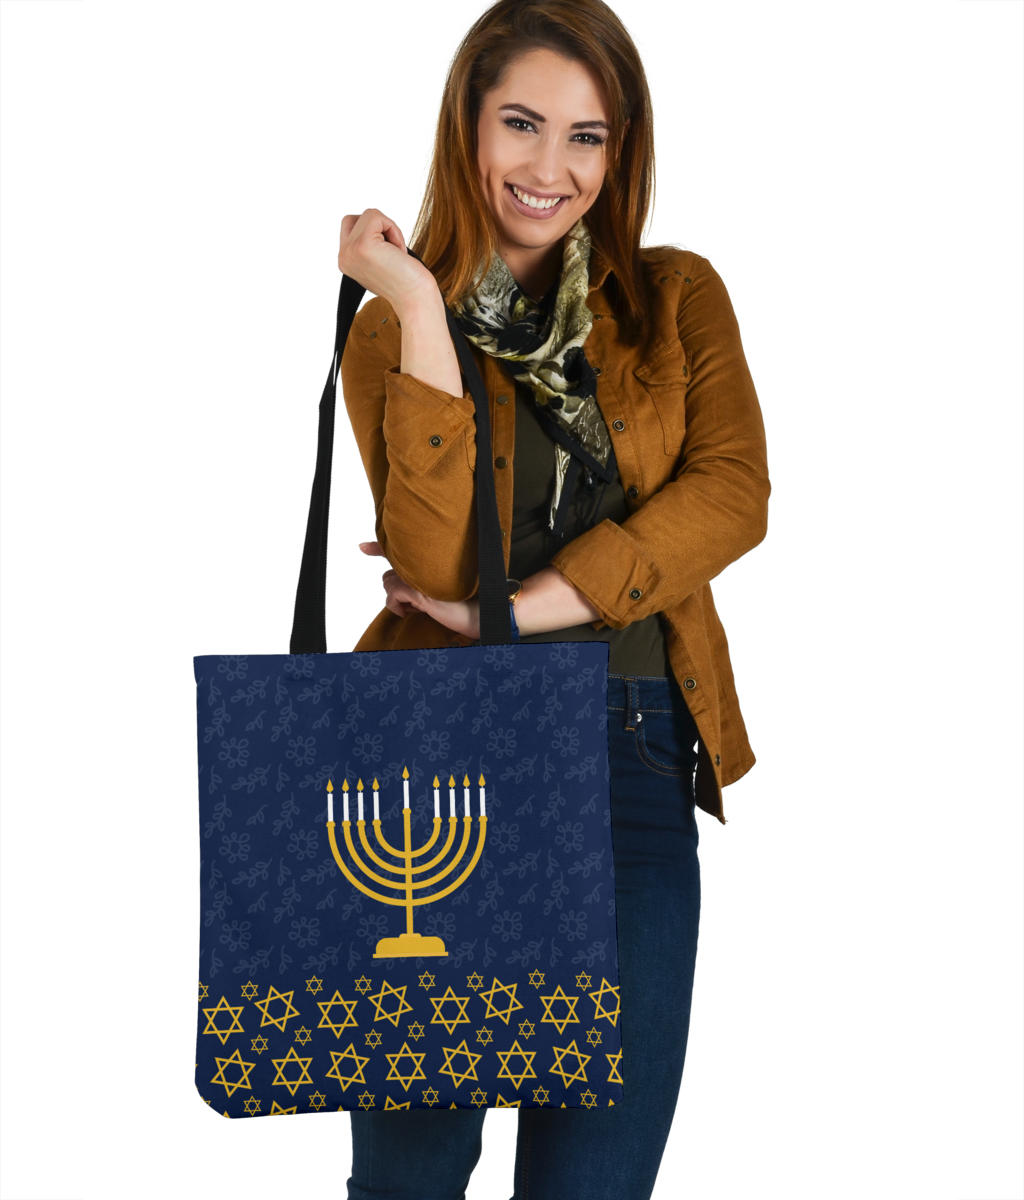 Hanukkah Night Cloth Tote Bag